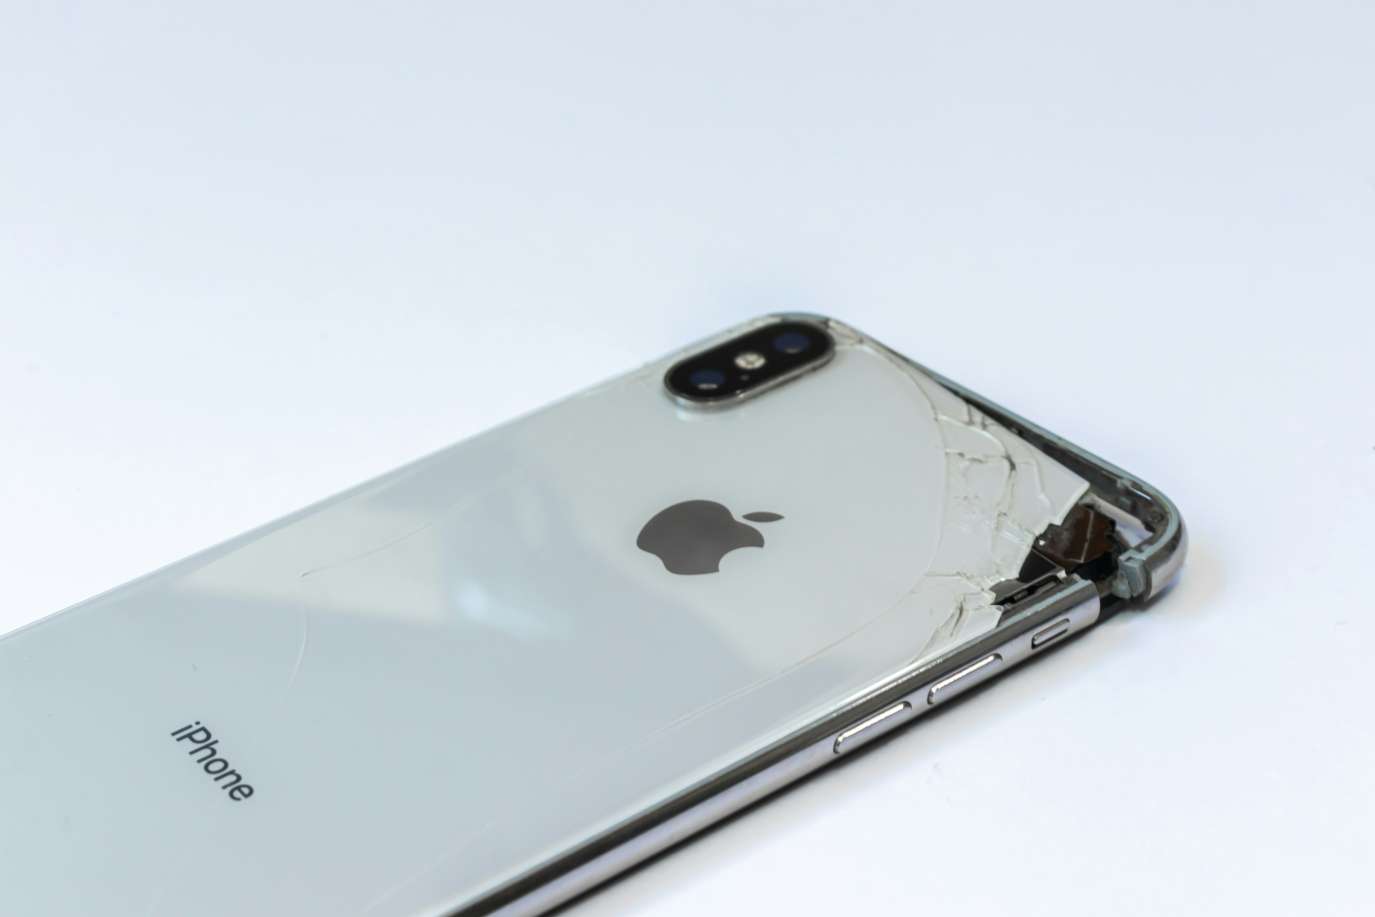 تحديث جديد لإصلاح أجهزة iPhone المعطلة بأسهل وأرخص تكلفة